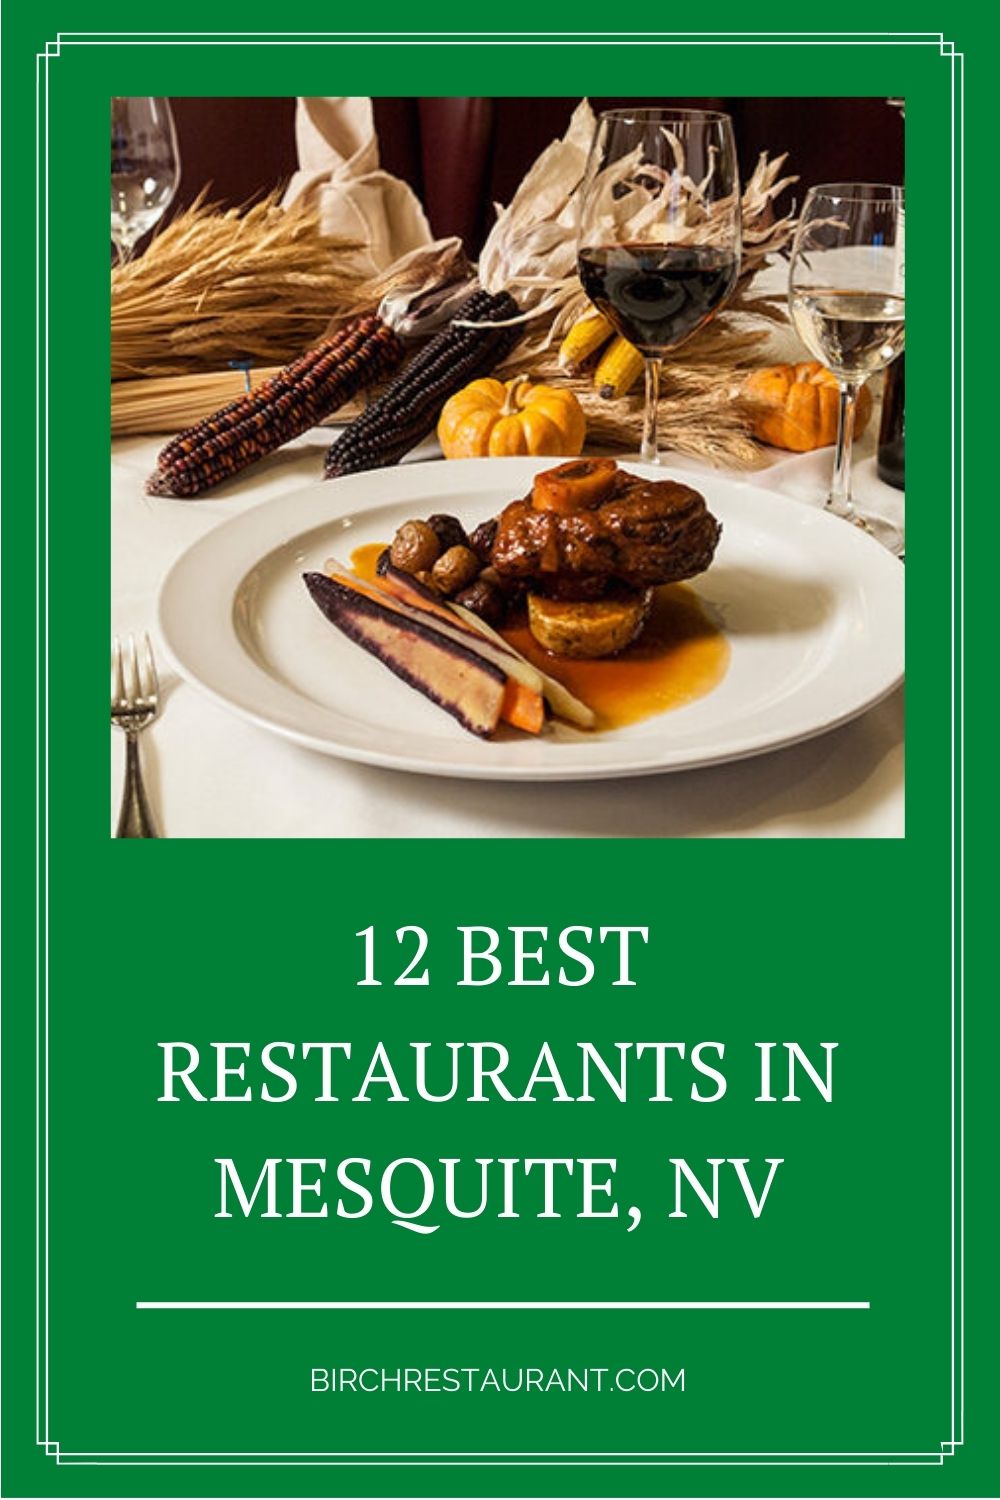 Best Restaurants in Mesquite